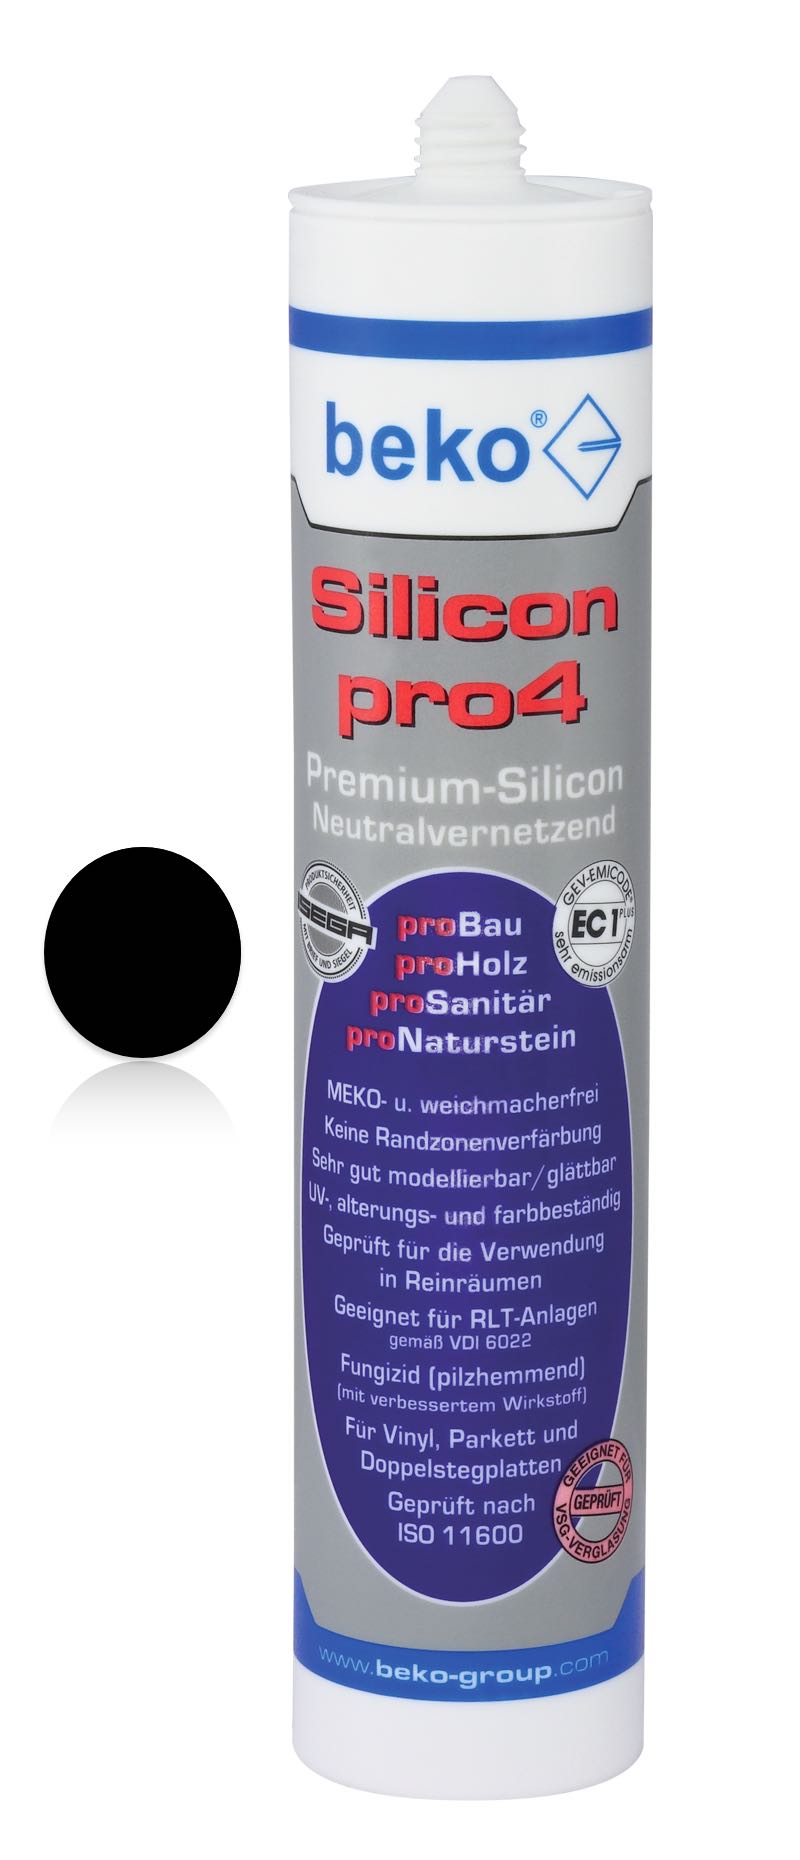 Silicon schwarz pro4 - Neutralvernetzendes Premium-Silicon